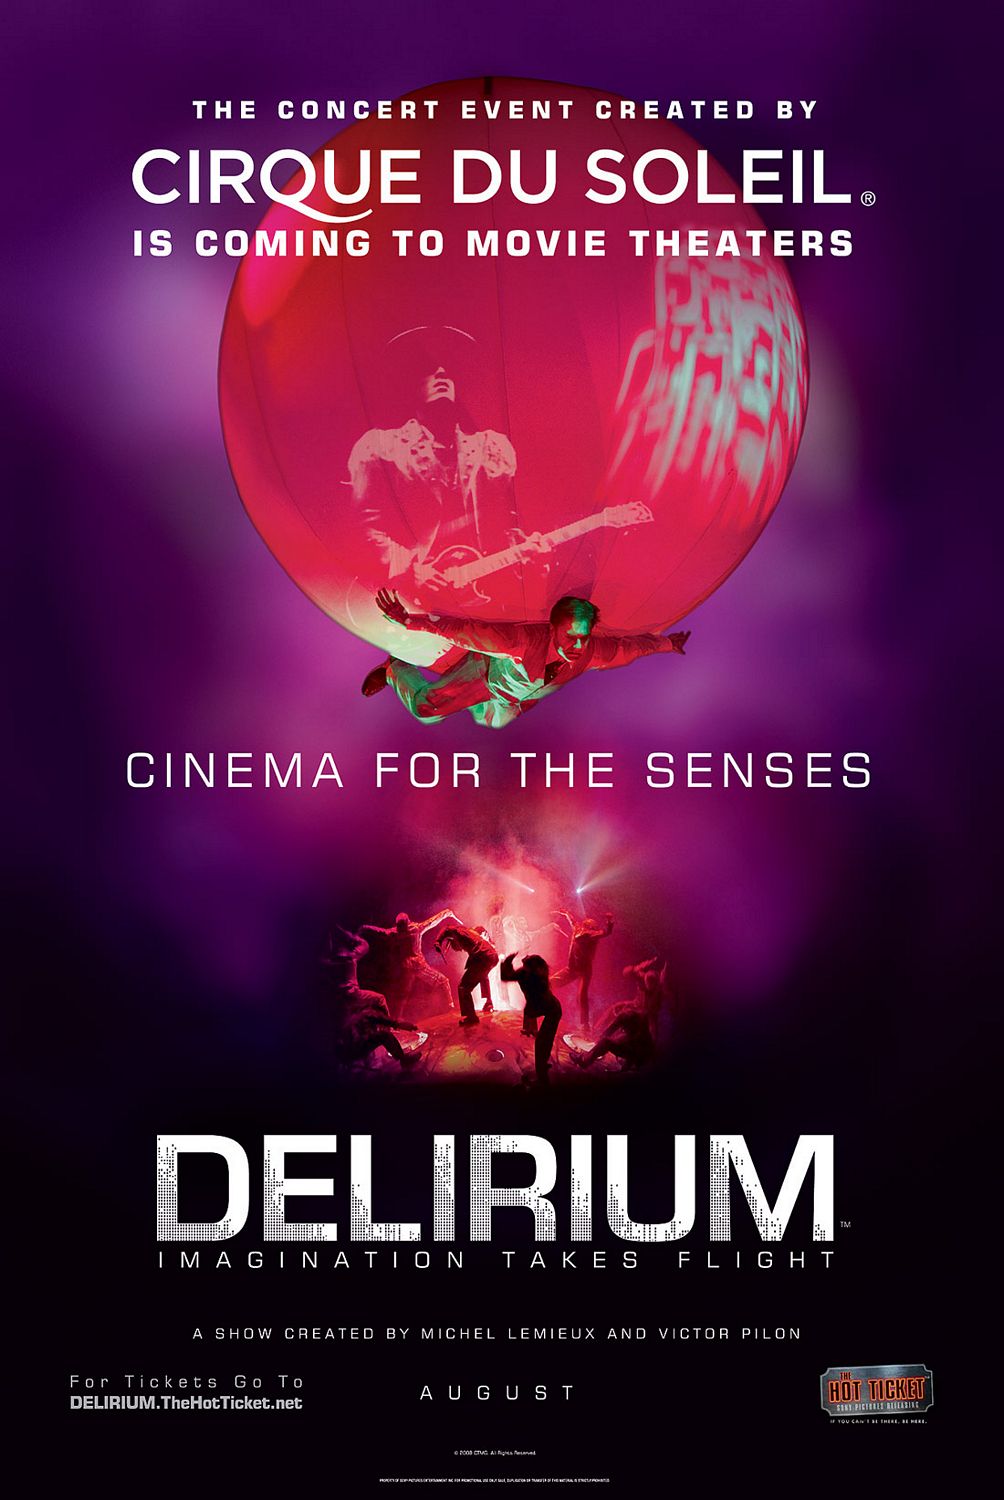 Extra Large Movie Poster Image for Cirque du Soleil: Delirium 